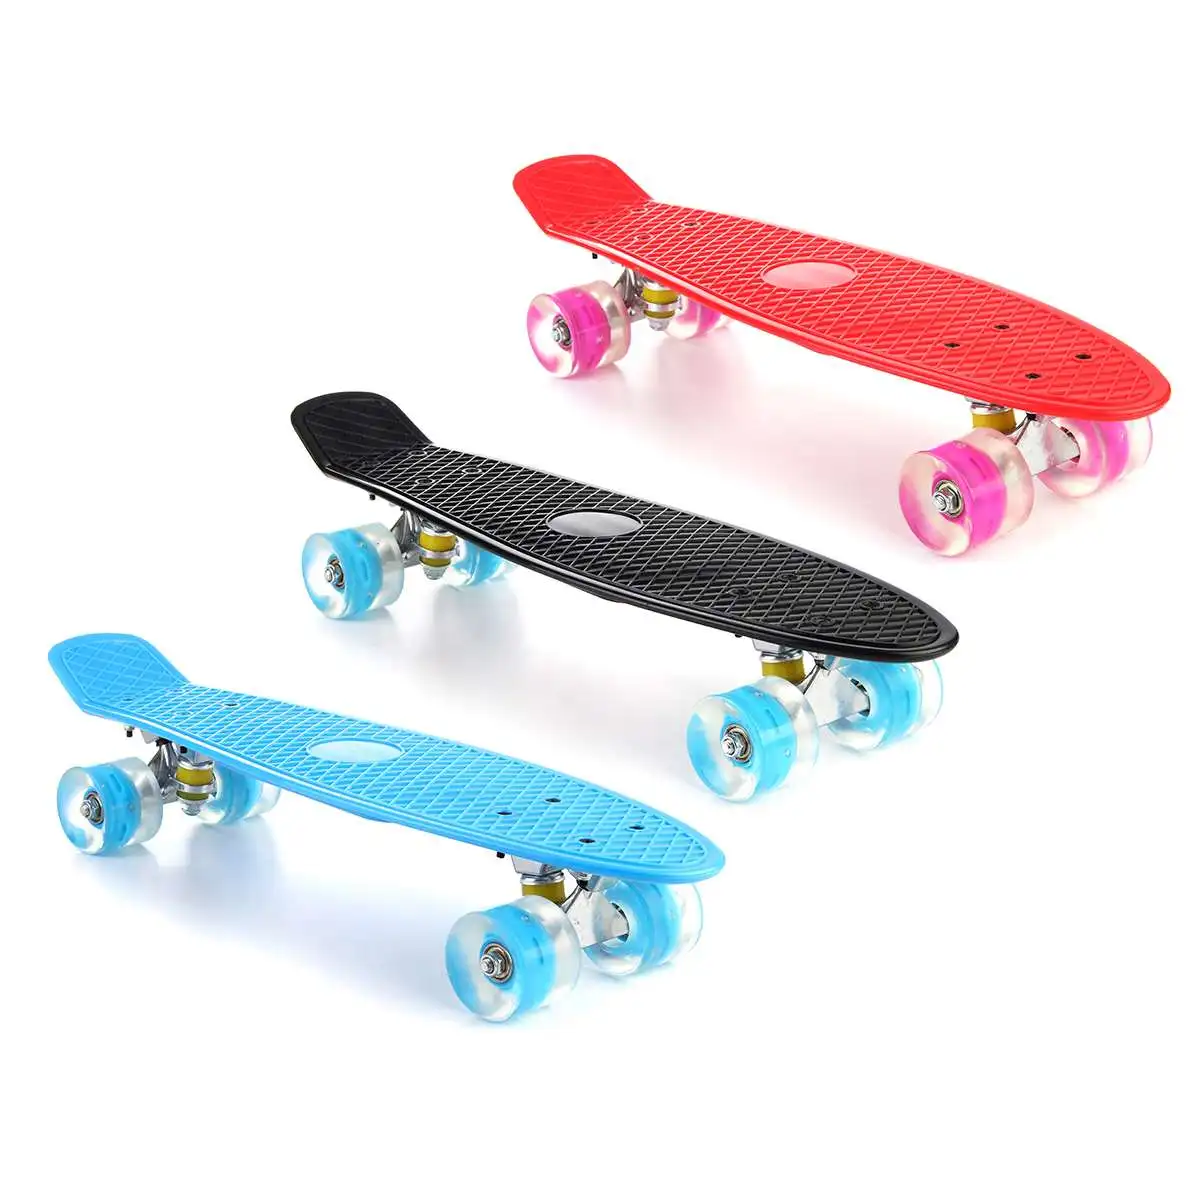 22 Colių Keturių ratų Mini Longboard Pastelinių Spalvų Skate Board riedlentė su LED Mirksi Ratai Retro Riedlentė